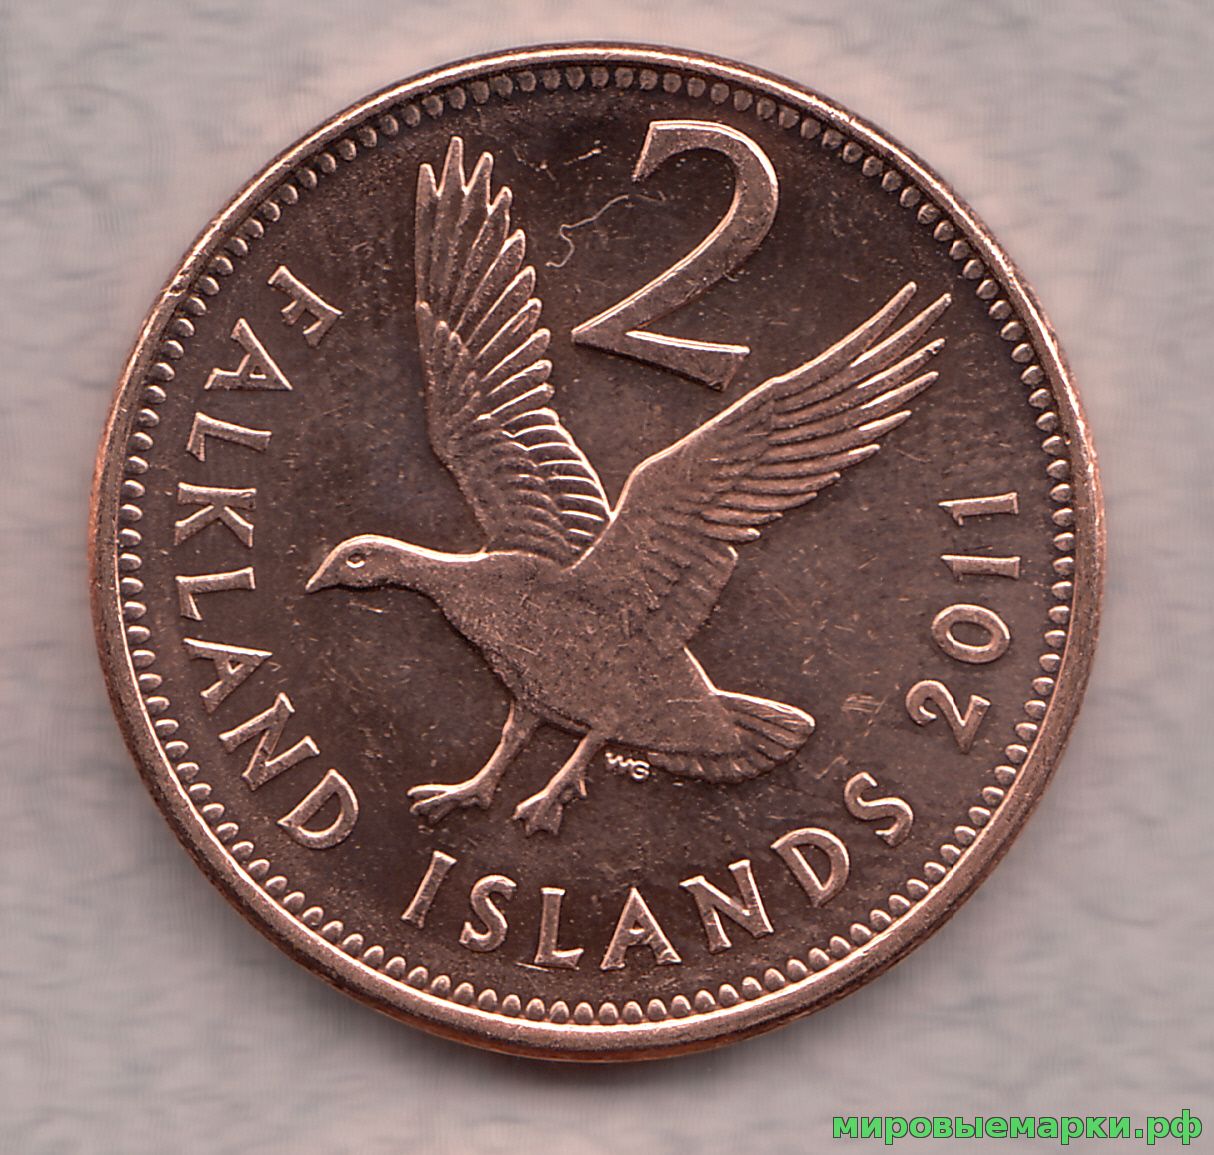 Фолклендские острова 2011 г. 2 пенса, UNC(мешковые)